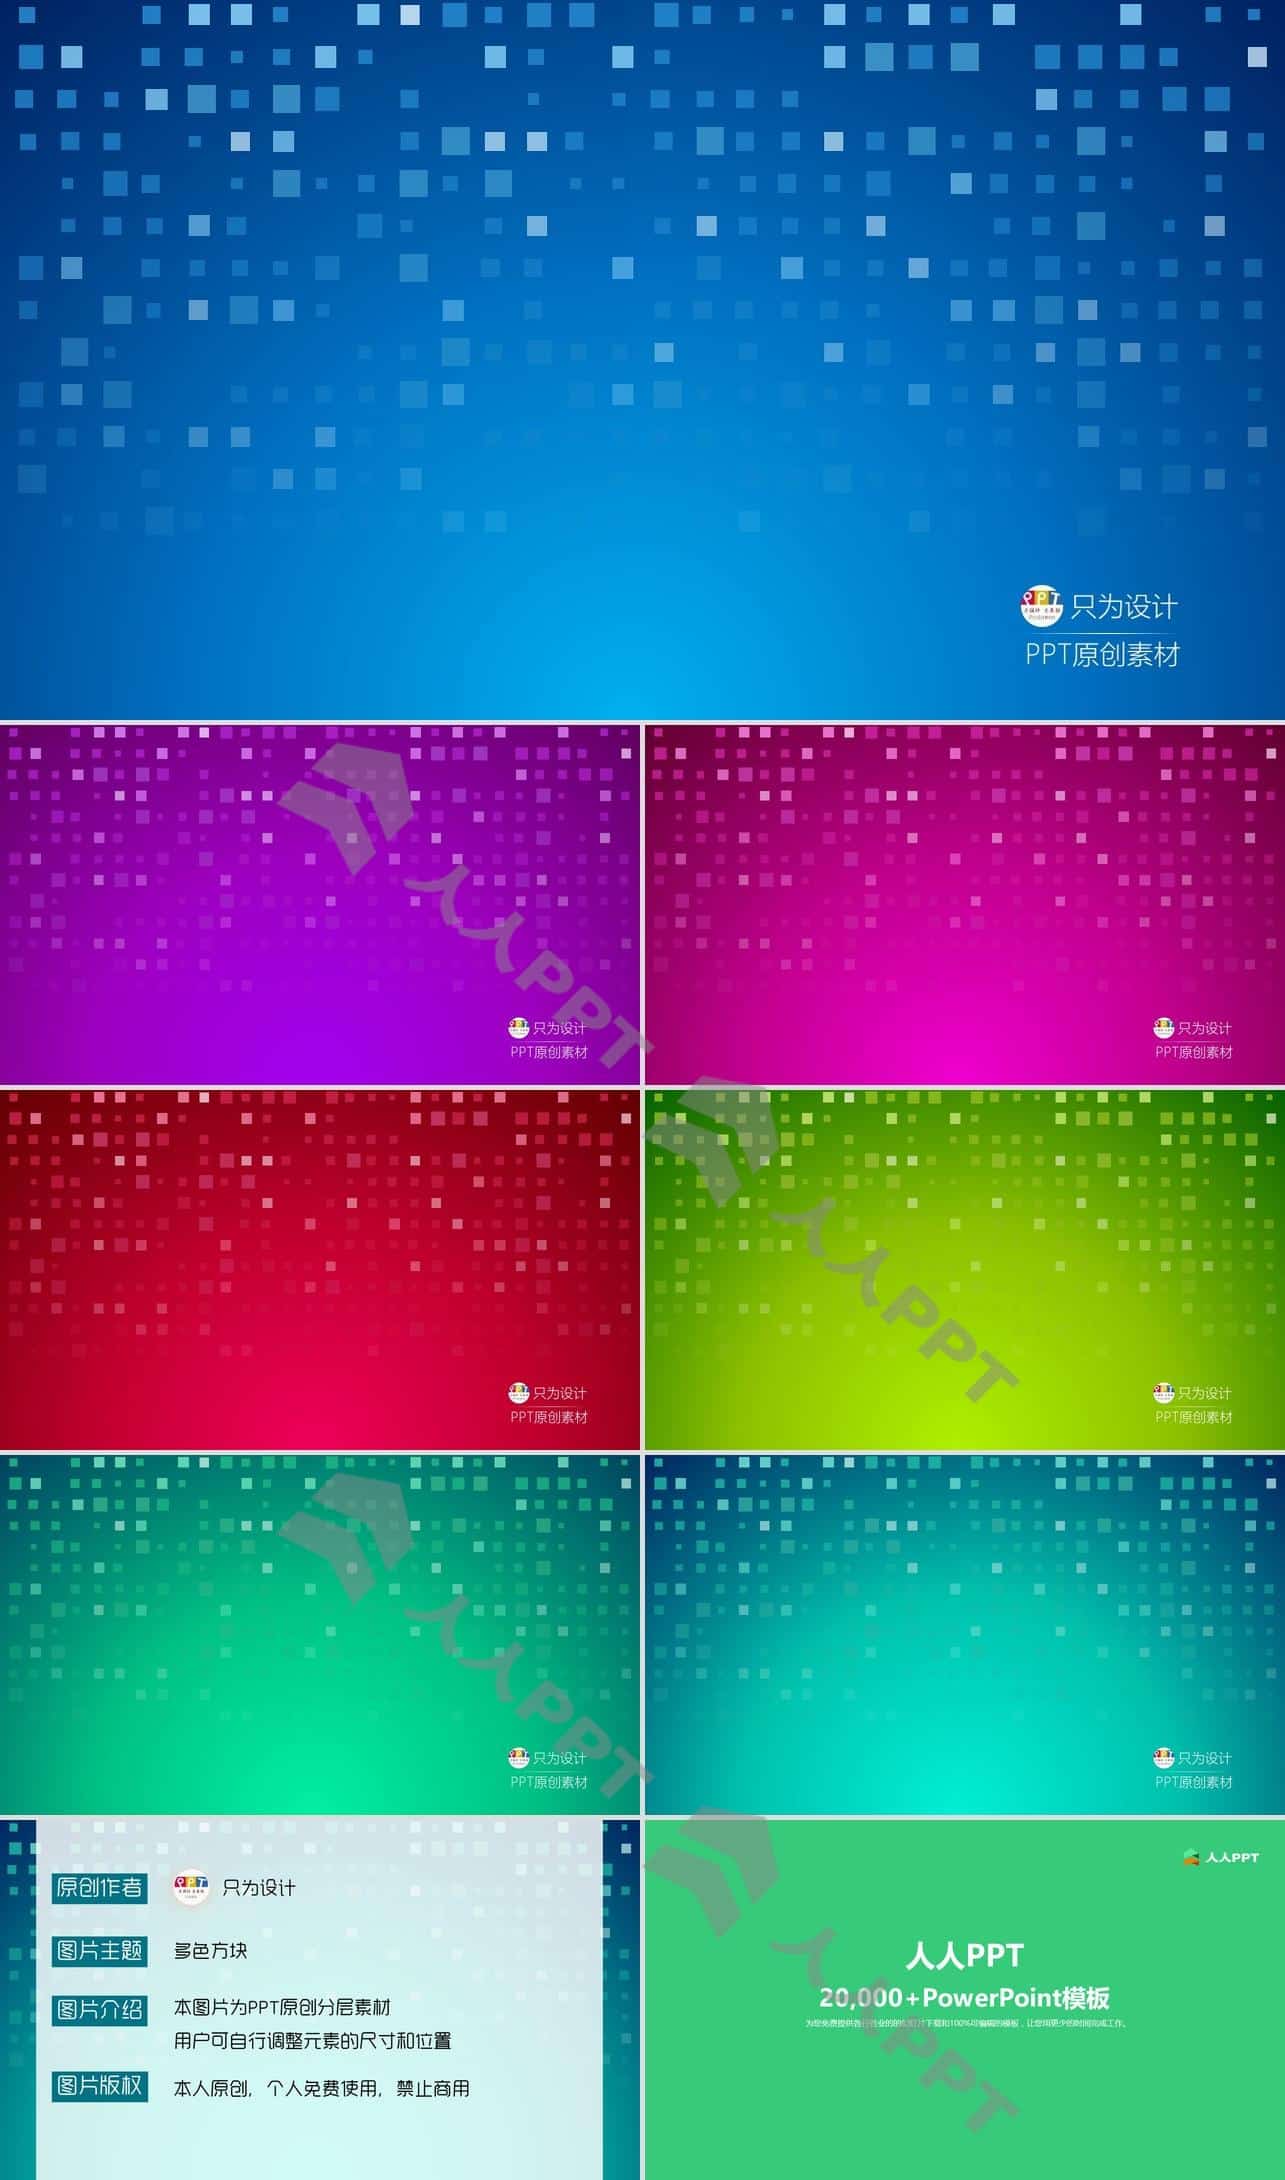 多套配色方案空间感方块创意封面背景PPT源文件长图